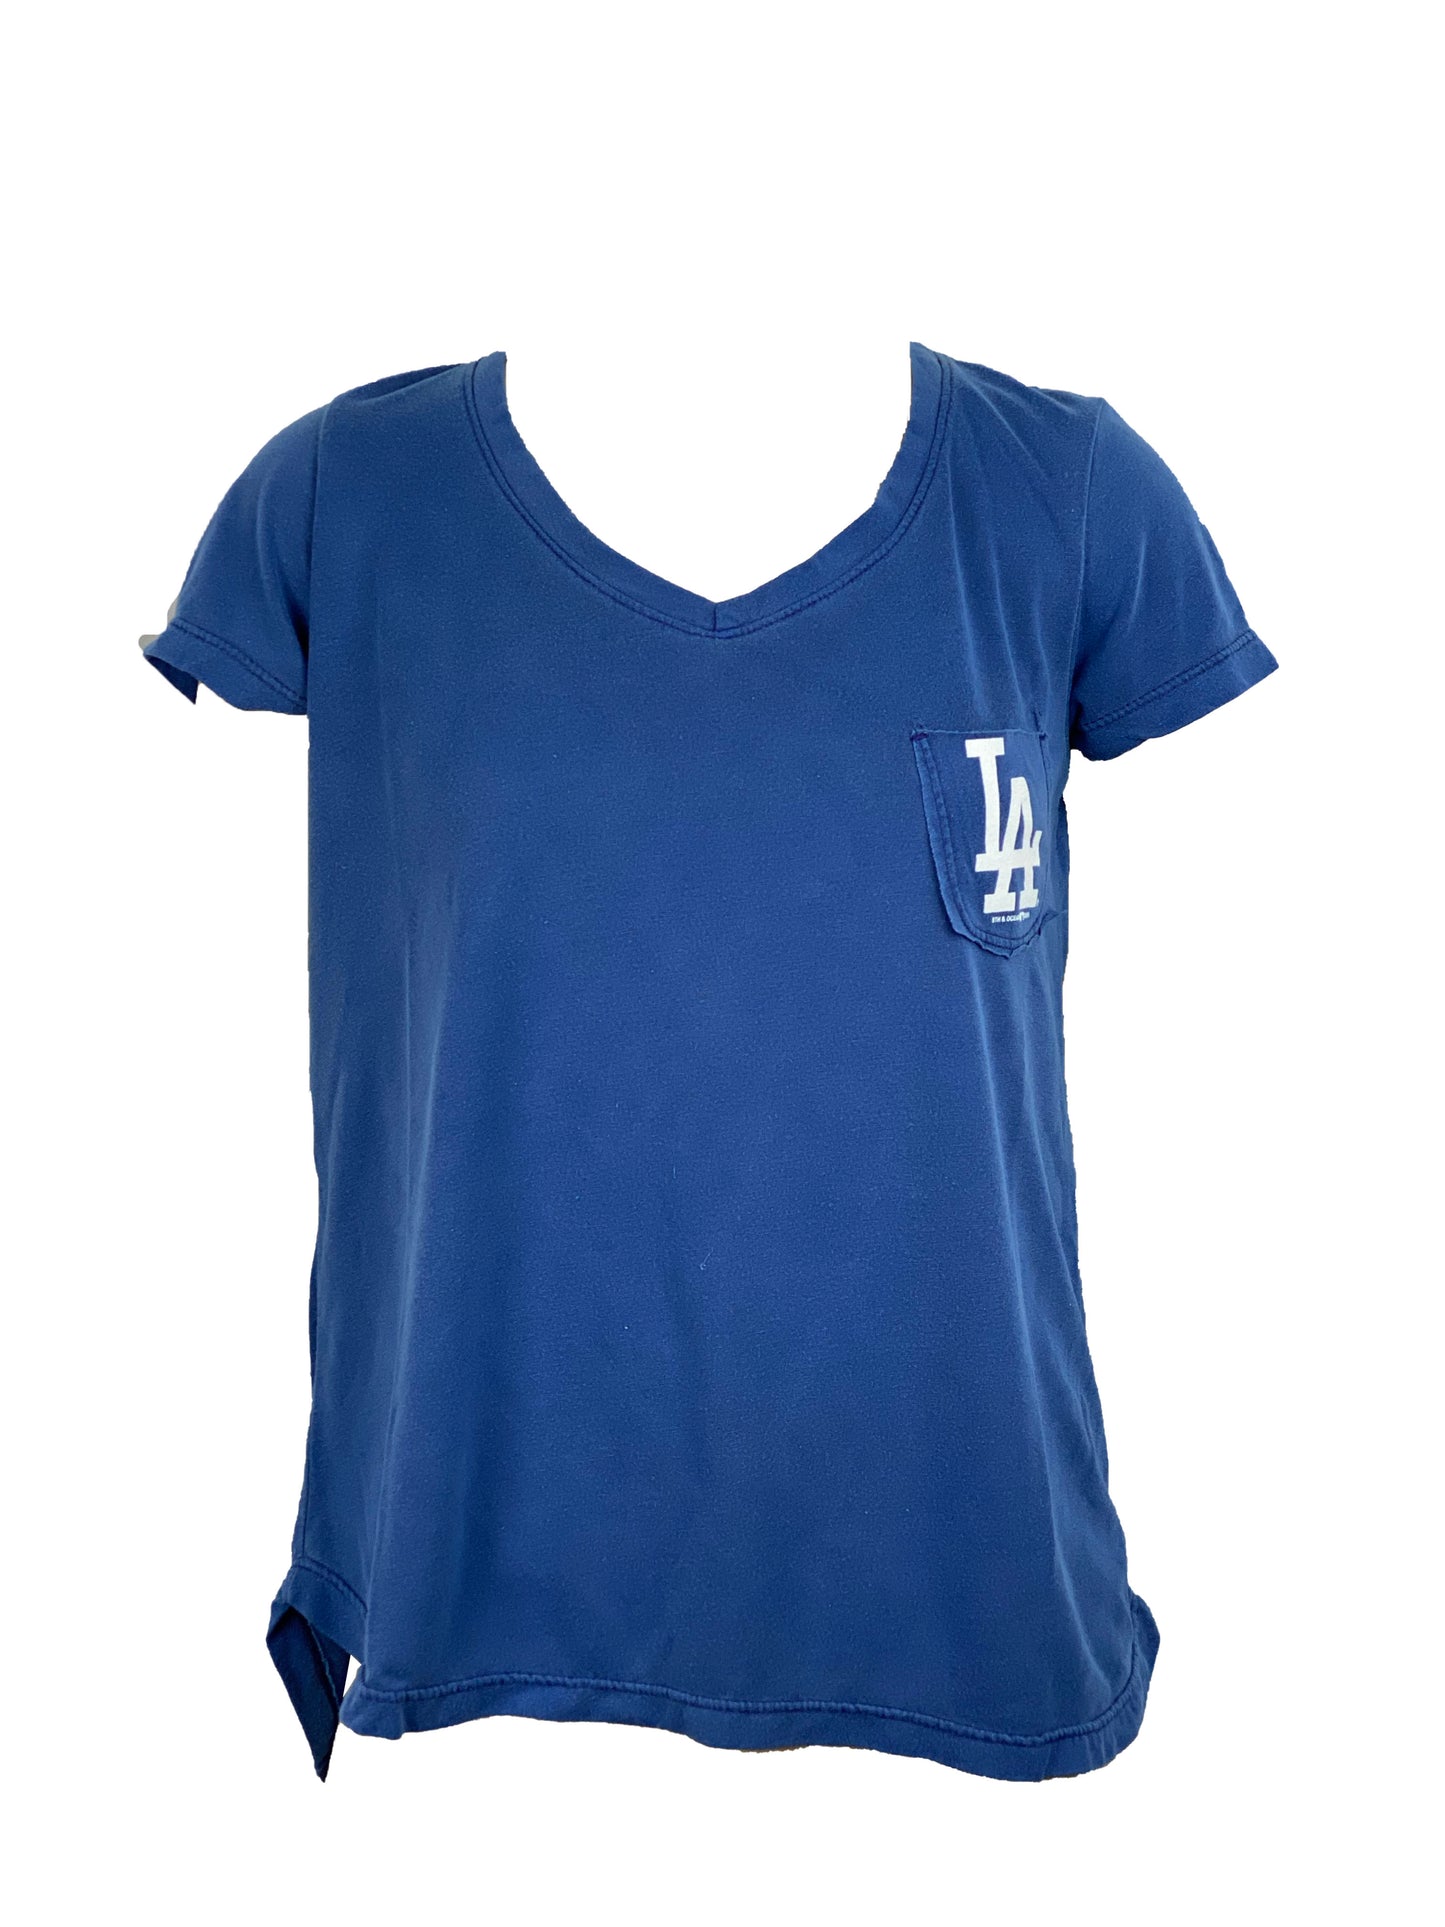 FIFTH&OCEAN Los Angeles Dodgers Women's Pocket Logo T-Shirt 20 Blu / S